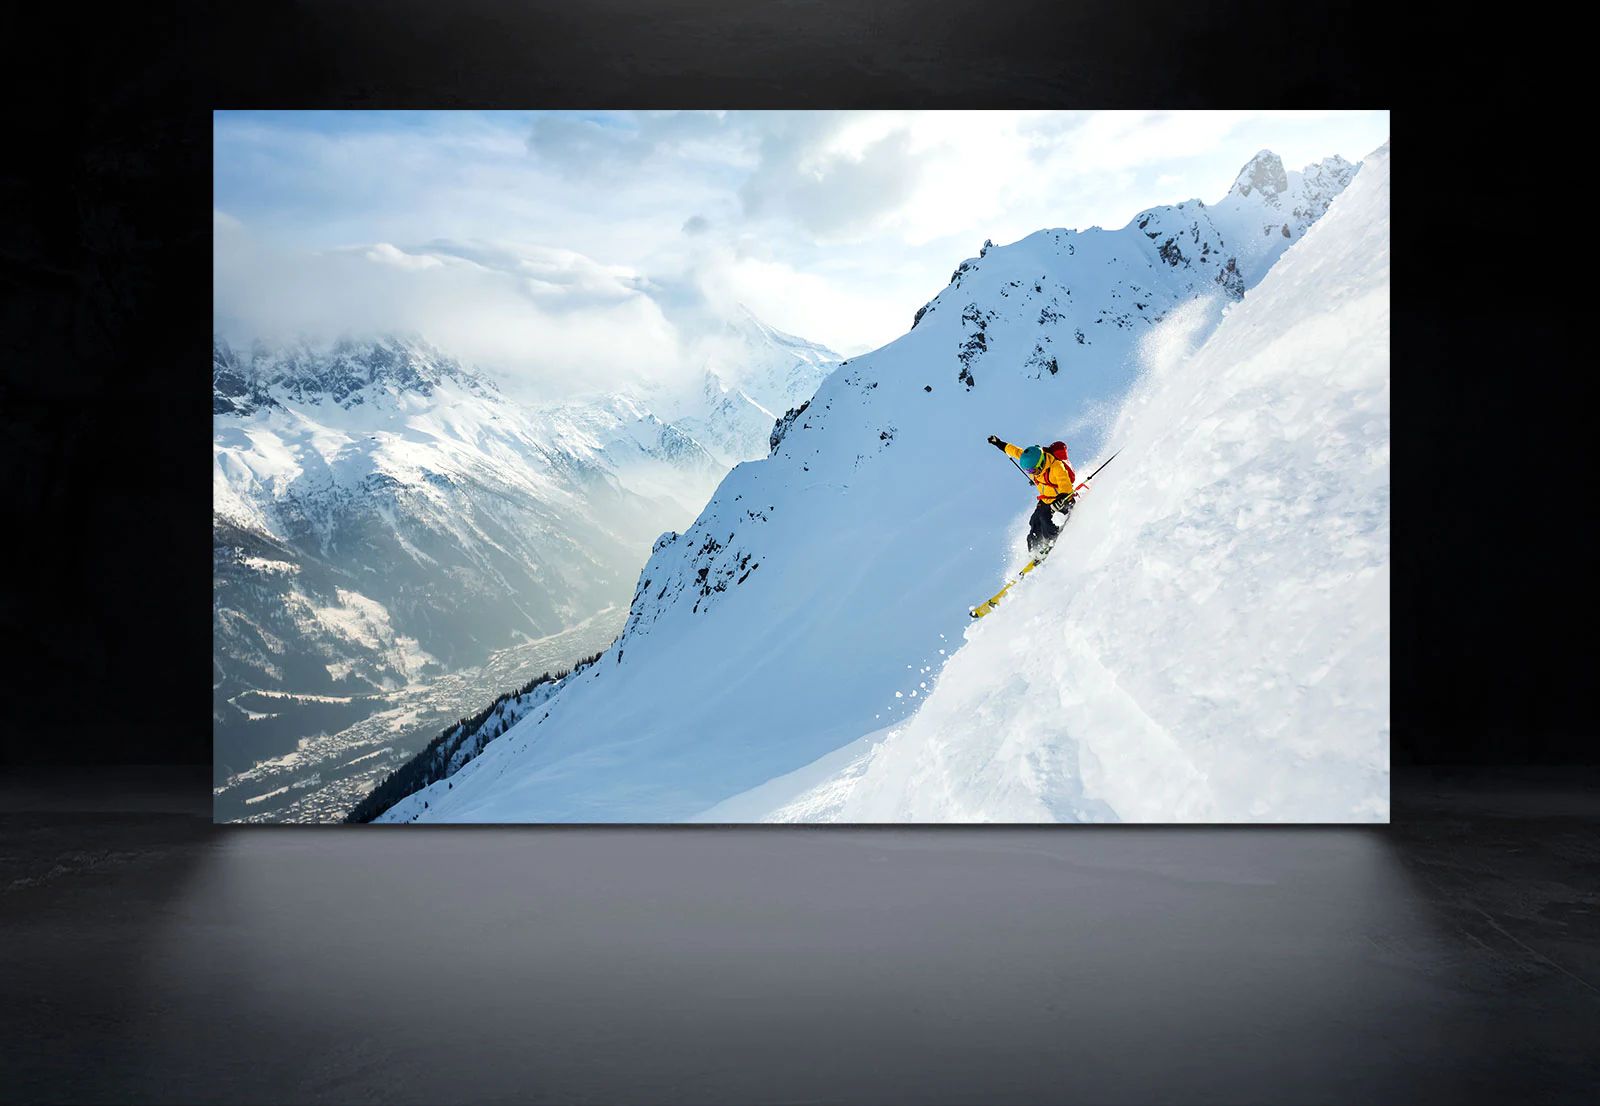 Изображение человека, катающегося на лыжах в заснеженных горах, показанное для сравнения яркости и резкости на экранах LG OLED и LG OLED evo. (просмотр видео)